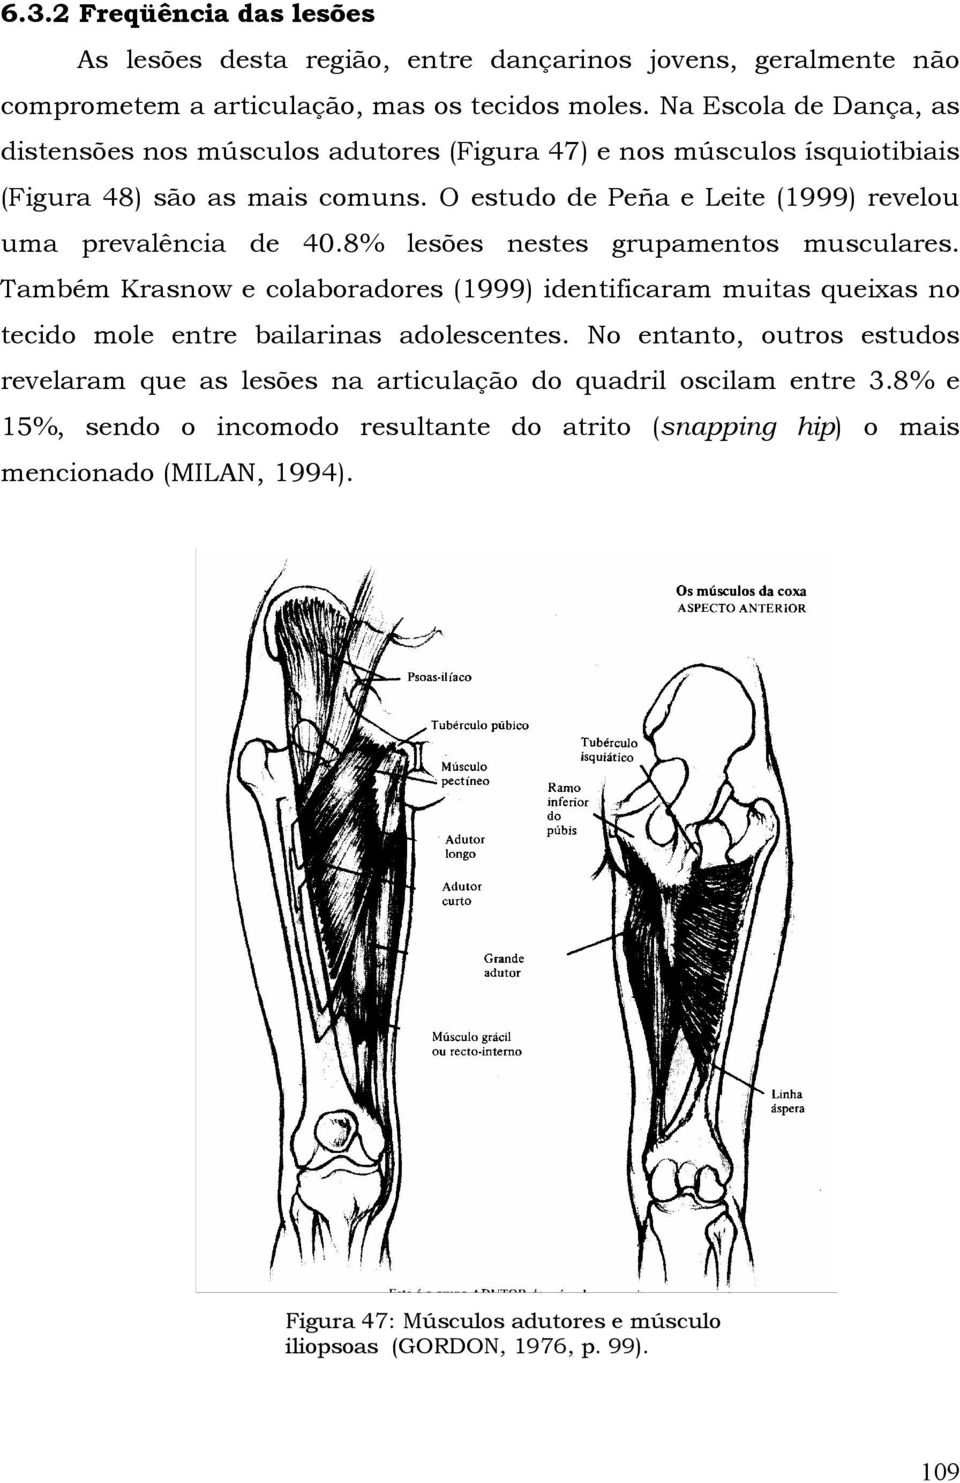 O estudo de Peña e Leite (1999) revelou uma prevalência de 40.8% lesões nestes grupamentos musculares.